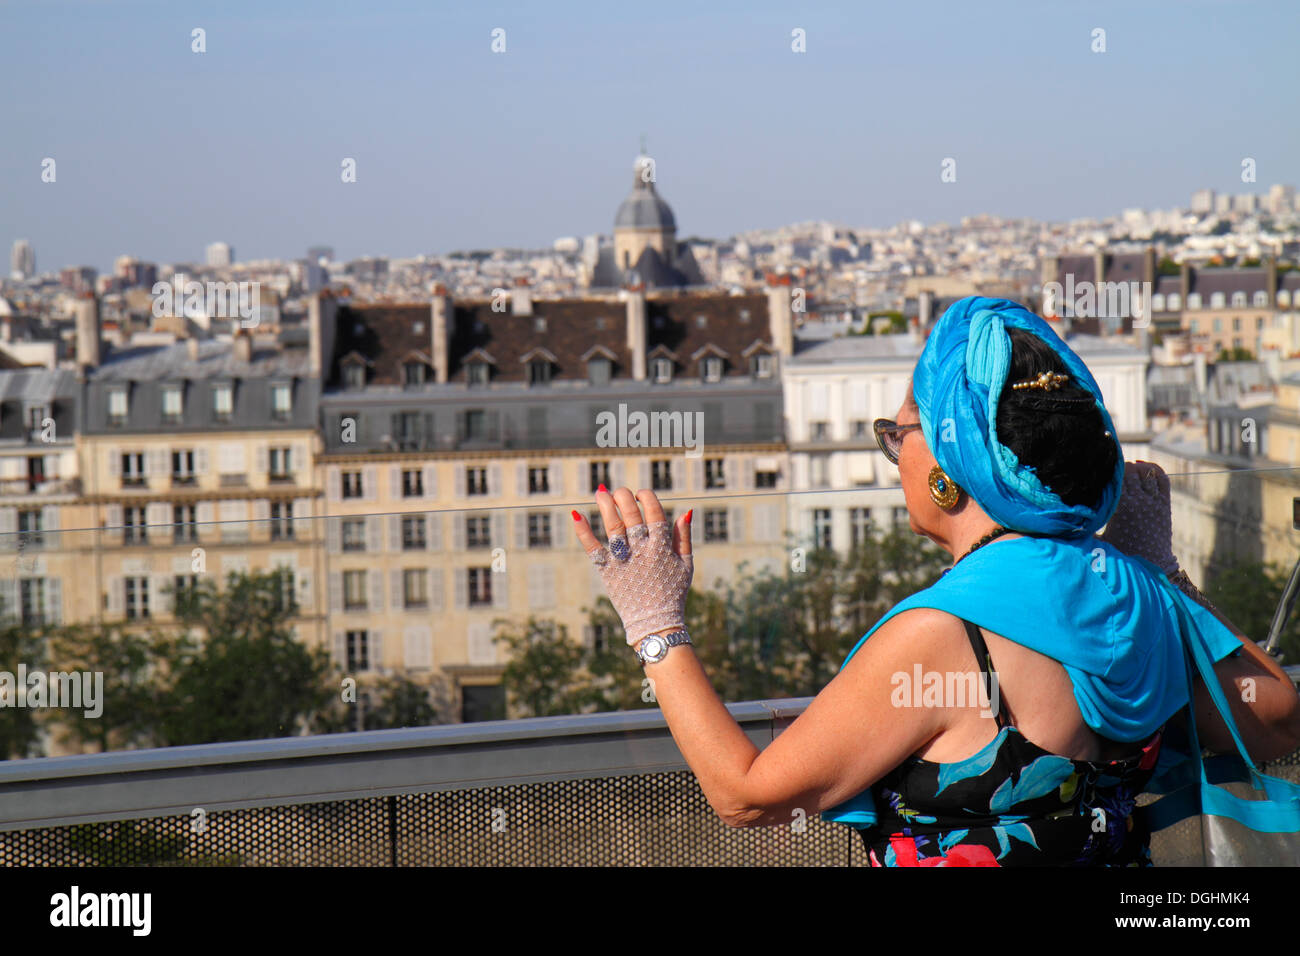 Paris France,5ème arrondissement,Institut du monde arabe,AWI,Institut du monde arabe,terrasse sur le toit,vue,vue sur la ville,toits,recherche,Haussman conci Banque D'Images